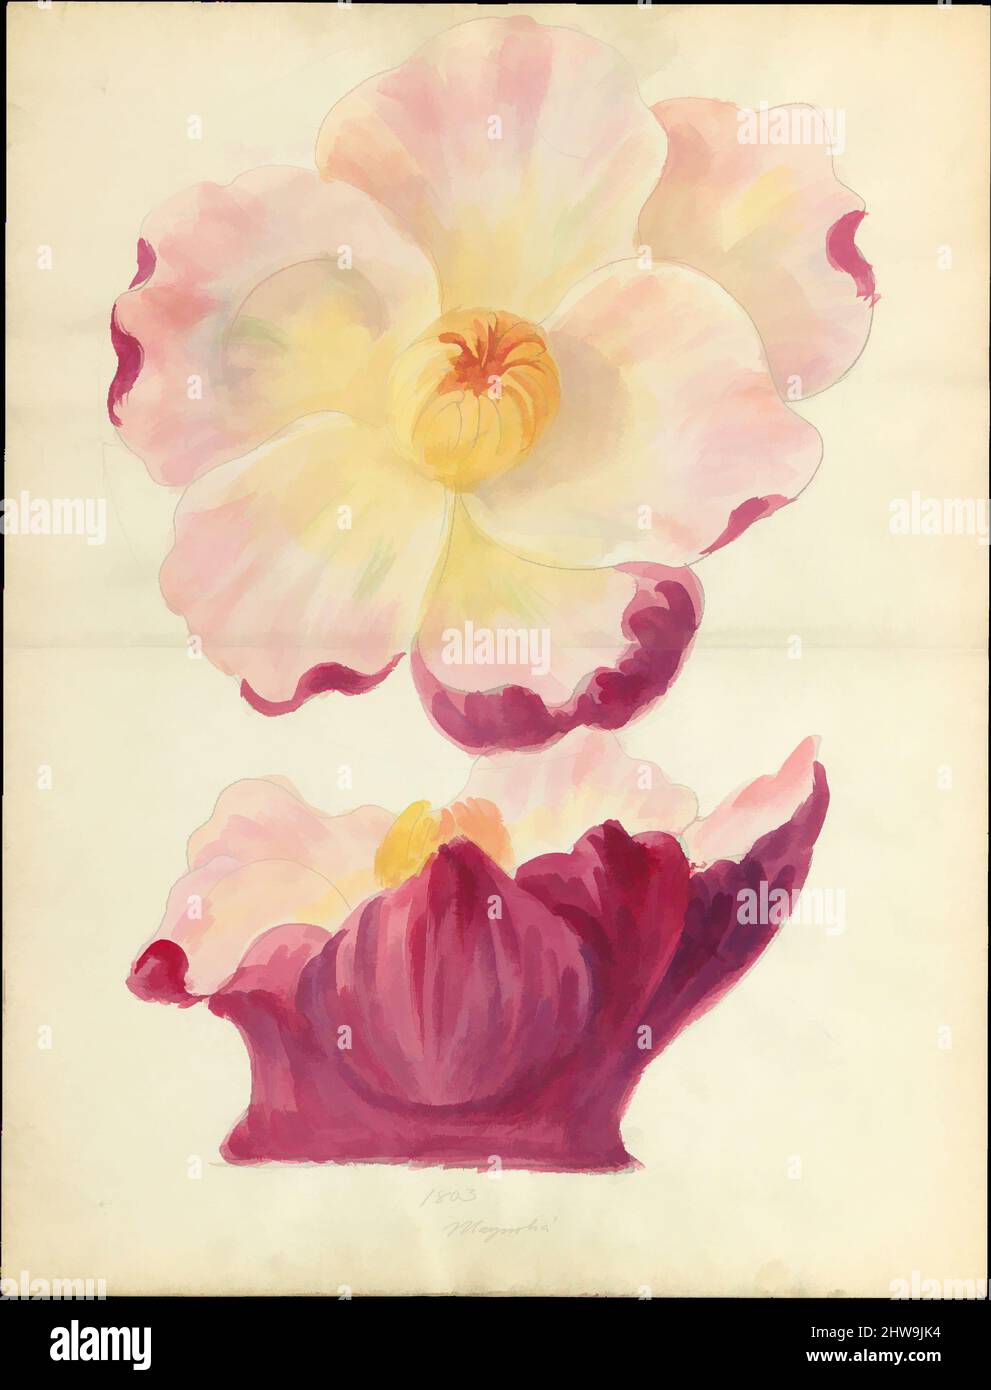 Art inspiré par le dessin de la fleur de magnolia de la capitale florale de loggia, Laurelton Hall, ca. 1900–1915, américain, aquarelle, graphite et encre sur papier, 18 3/8 x 14 po. (46,7 x 35,6 cm), dessins, Lenox, Incorporated (établi en 1889, oeuvres classiques modernisées par Artotop avec une touche de modernité. Formes, couleur et valeur, impact visuel accrocheur sur l'art émotions par la liberté d'œuvres d'art d'une manière contemporaine. Un message intemporel qui cherche une nouvelle direction créative. Artistes qui se tournent vers le support numérique et créent le NFT Artotop Banque D'Images